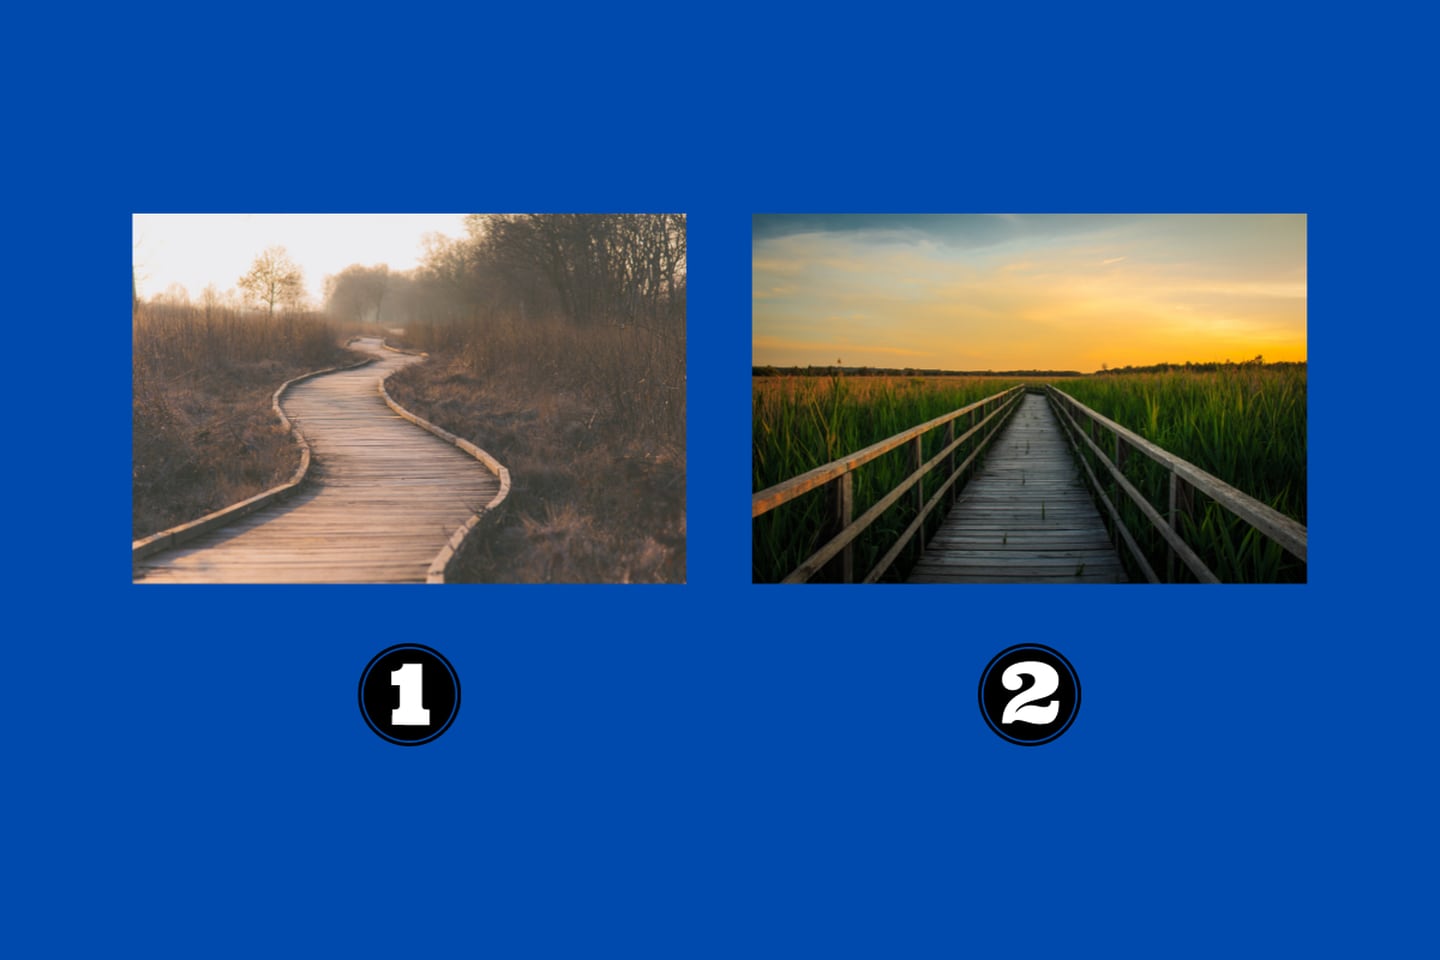 En este test de personalidad hay dos imágenes: la primera de un camino curvo sin mucho verde; y la segunda un camino recto con muchos árboles.